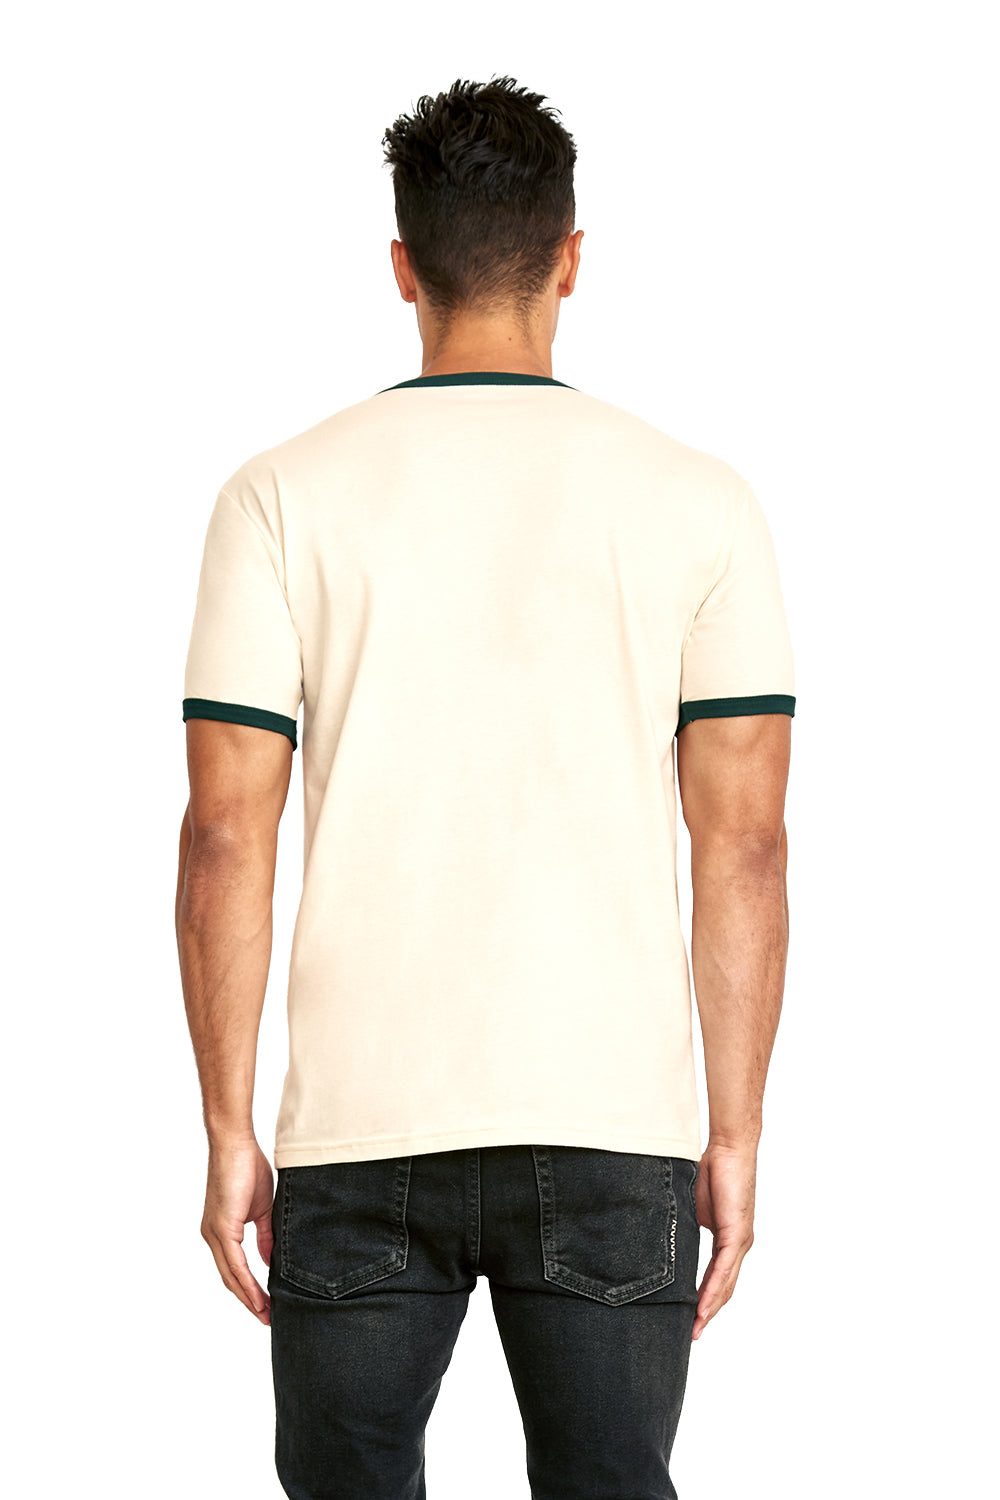 Next Level 3604 Mens Fine Jersey Ringer Short Sleeve Crewneck T-Shirt Natural/Forest Green Back